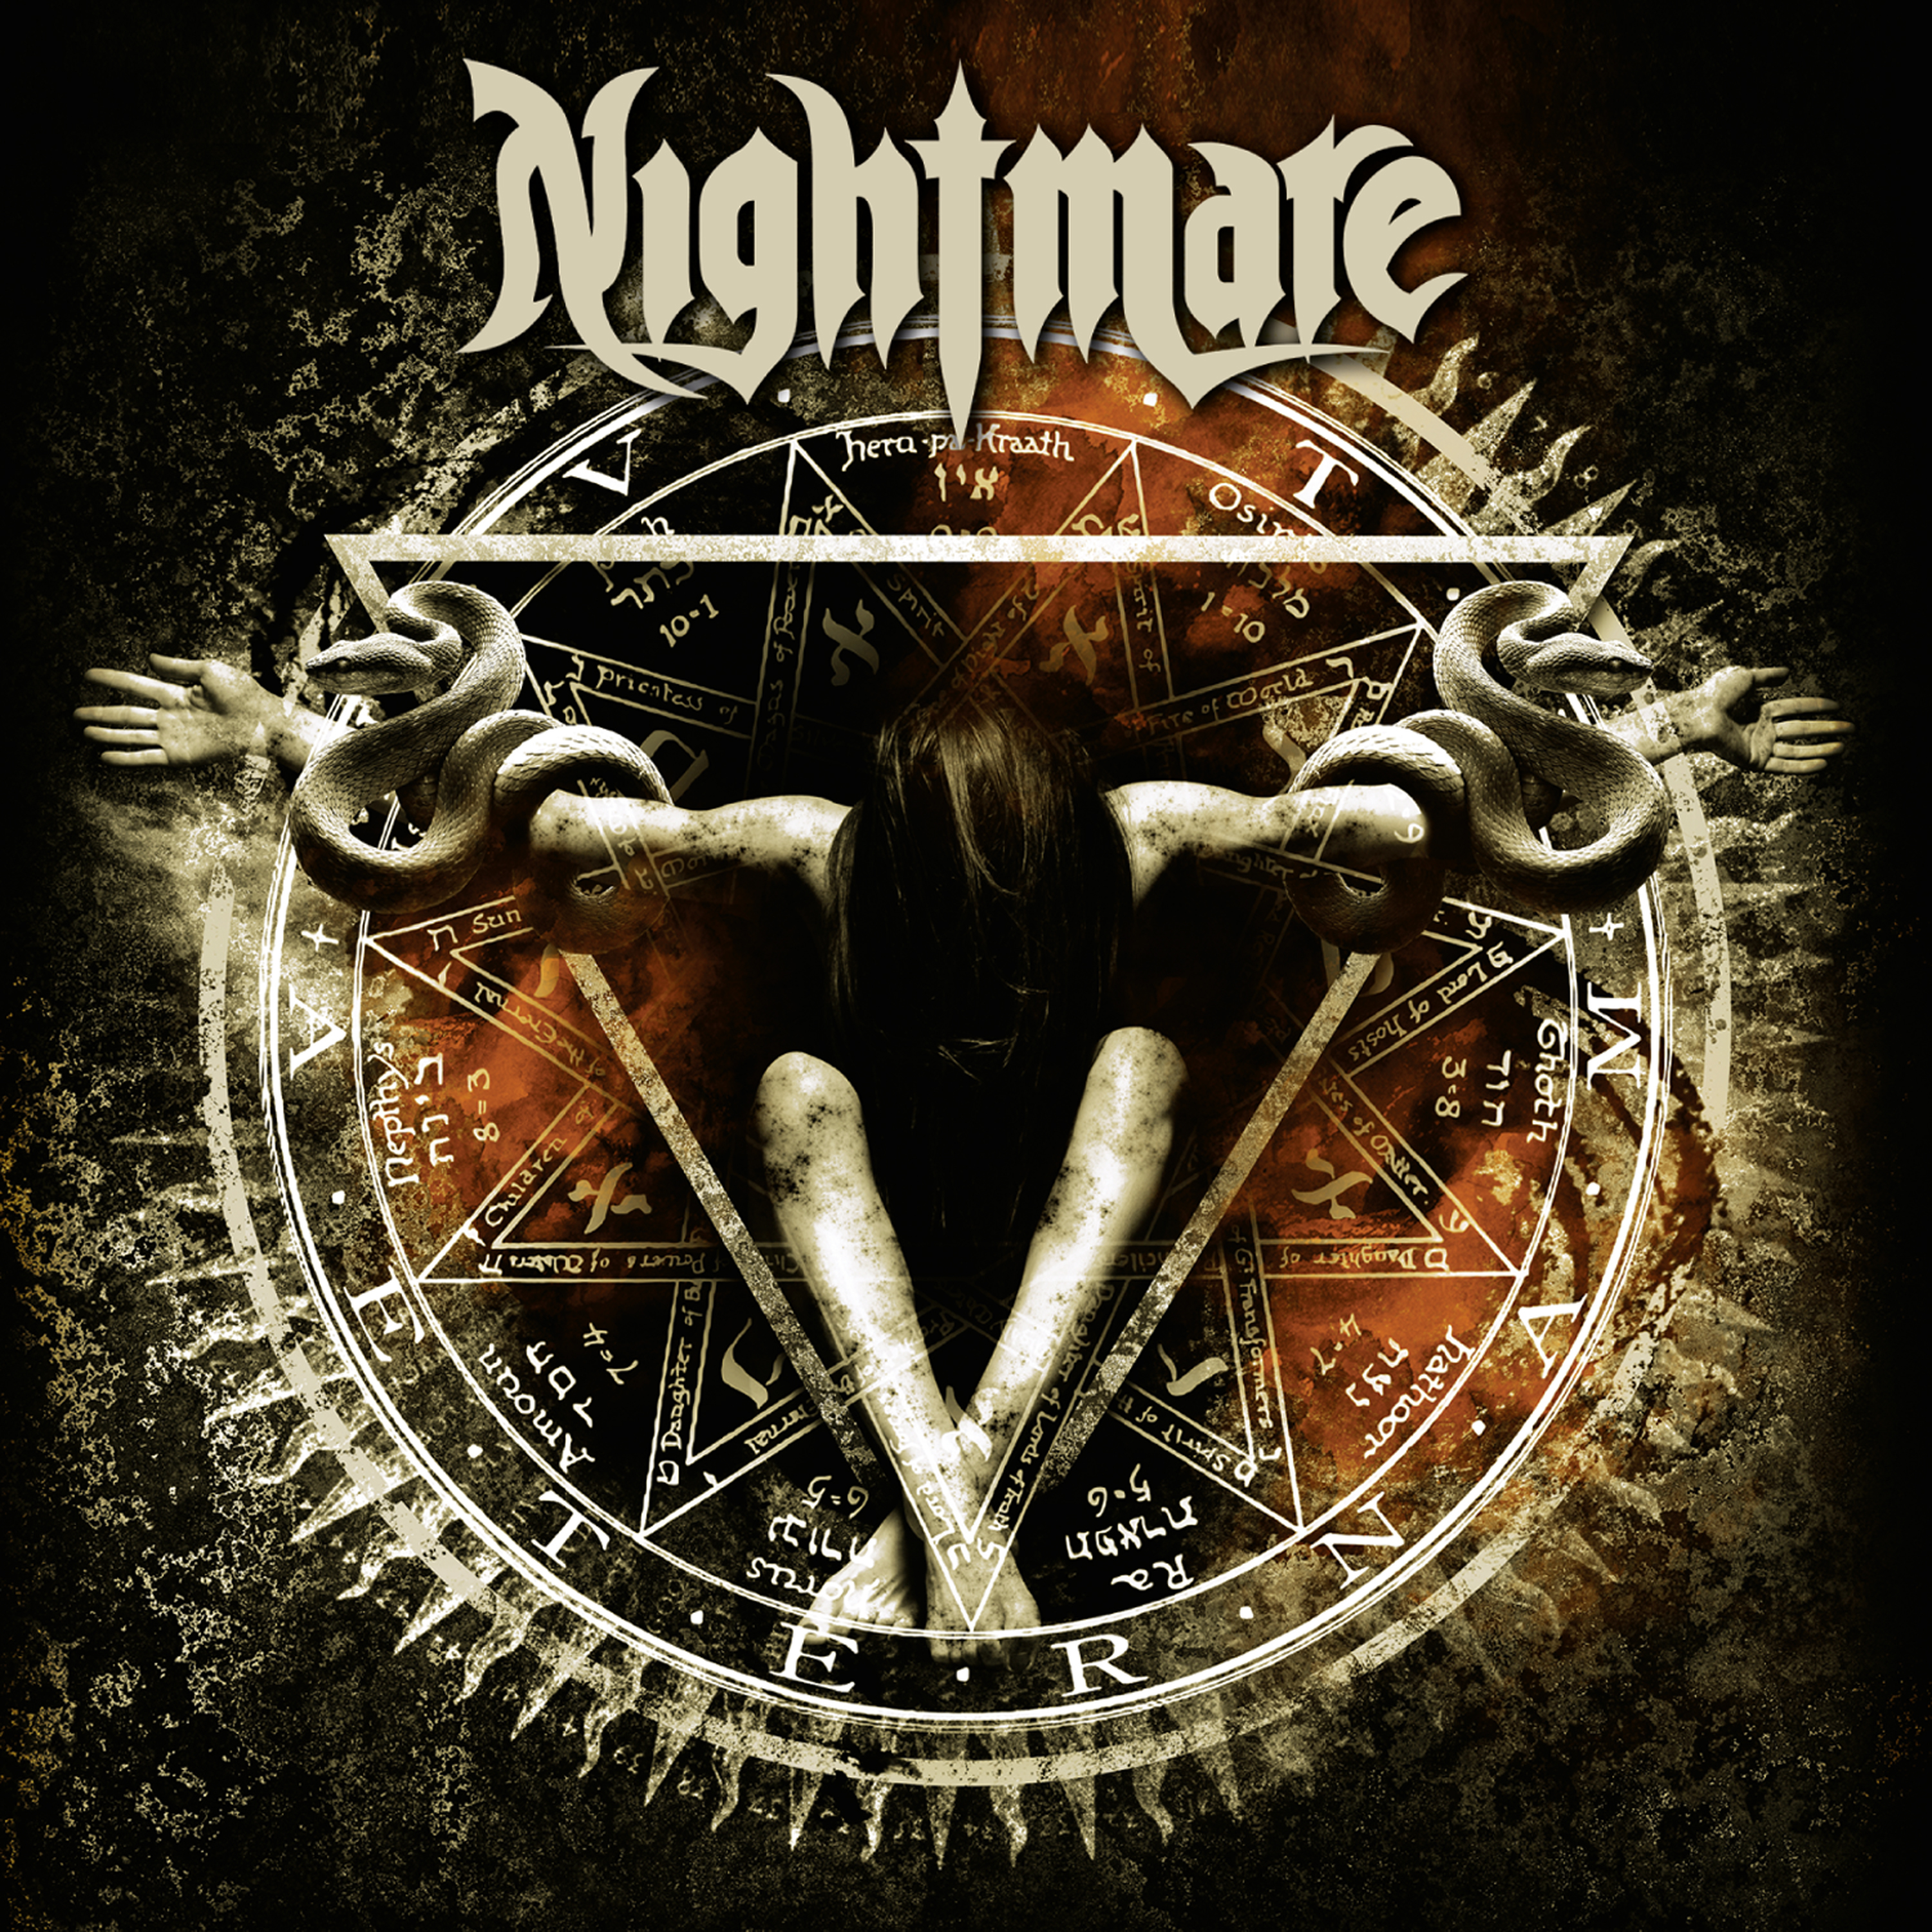 Группа кошмар. Nightmare - Aeternam (2020). Nightmare группа Франция. Nightmare группа металл. Обложки альбомов.